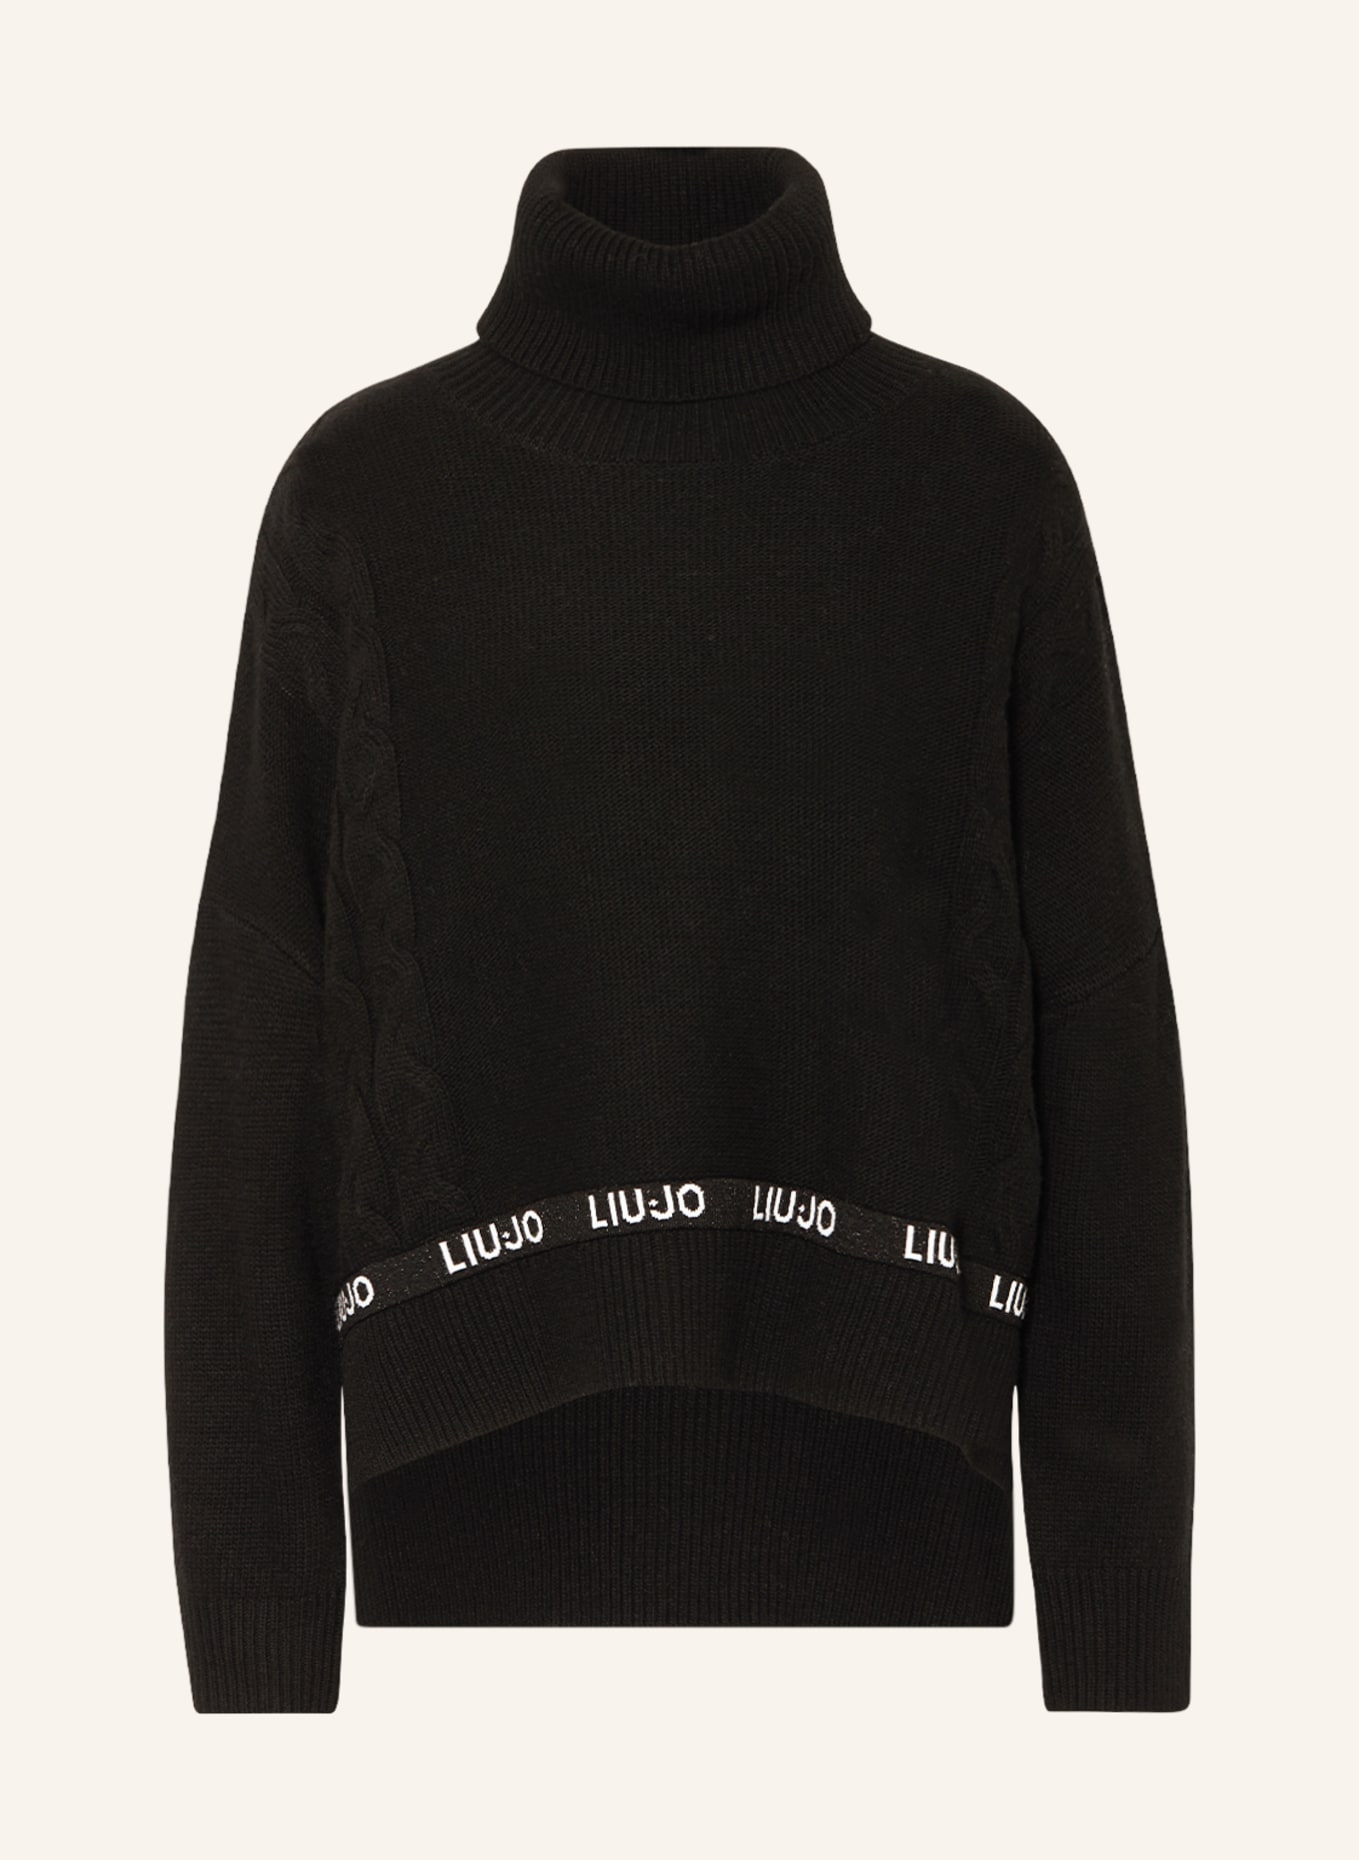 LIU JO Turtleneck sweater, Color: BLACK (Image 1)